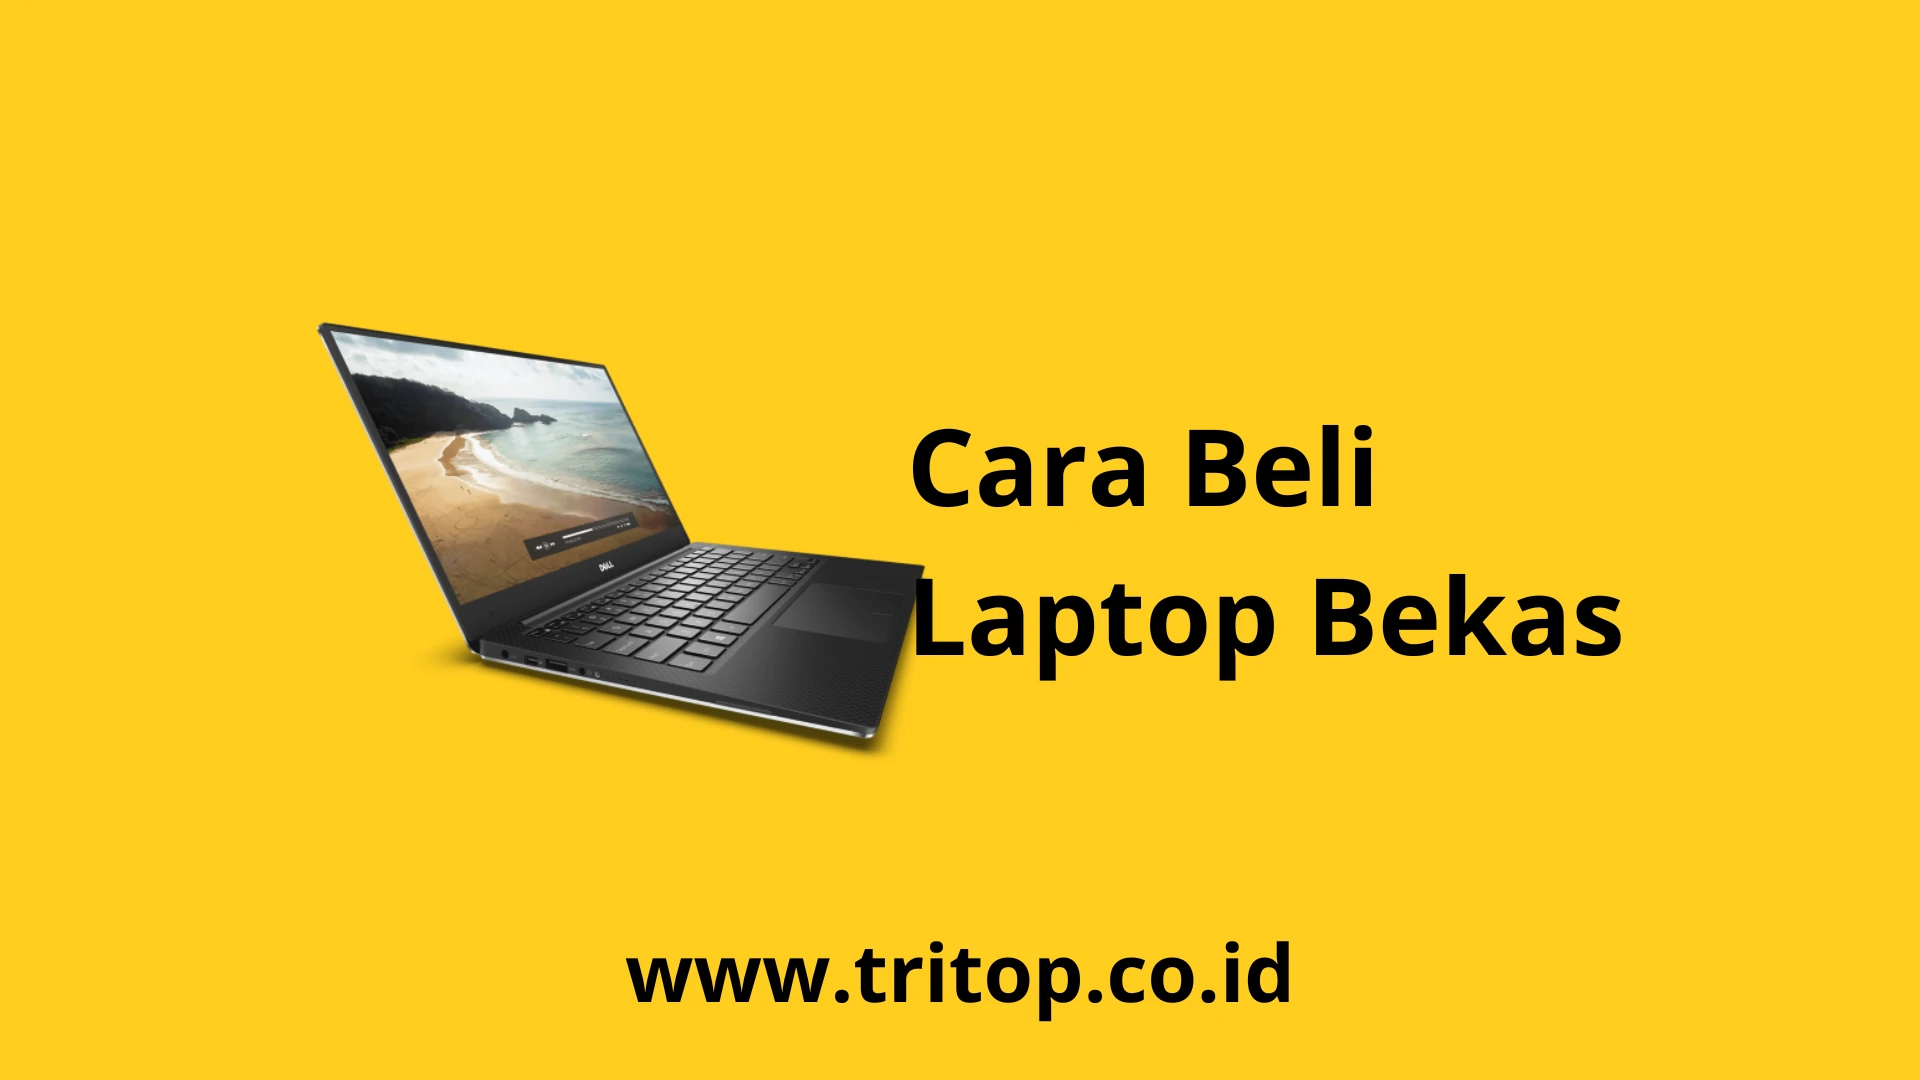 Beli Laptop Bekas Tritop.co.id